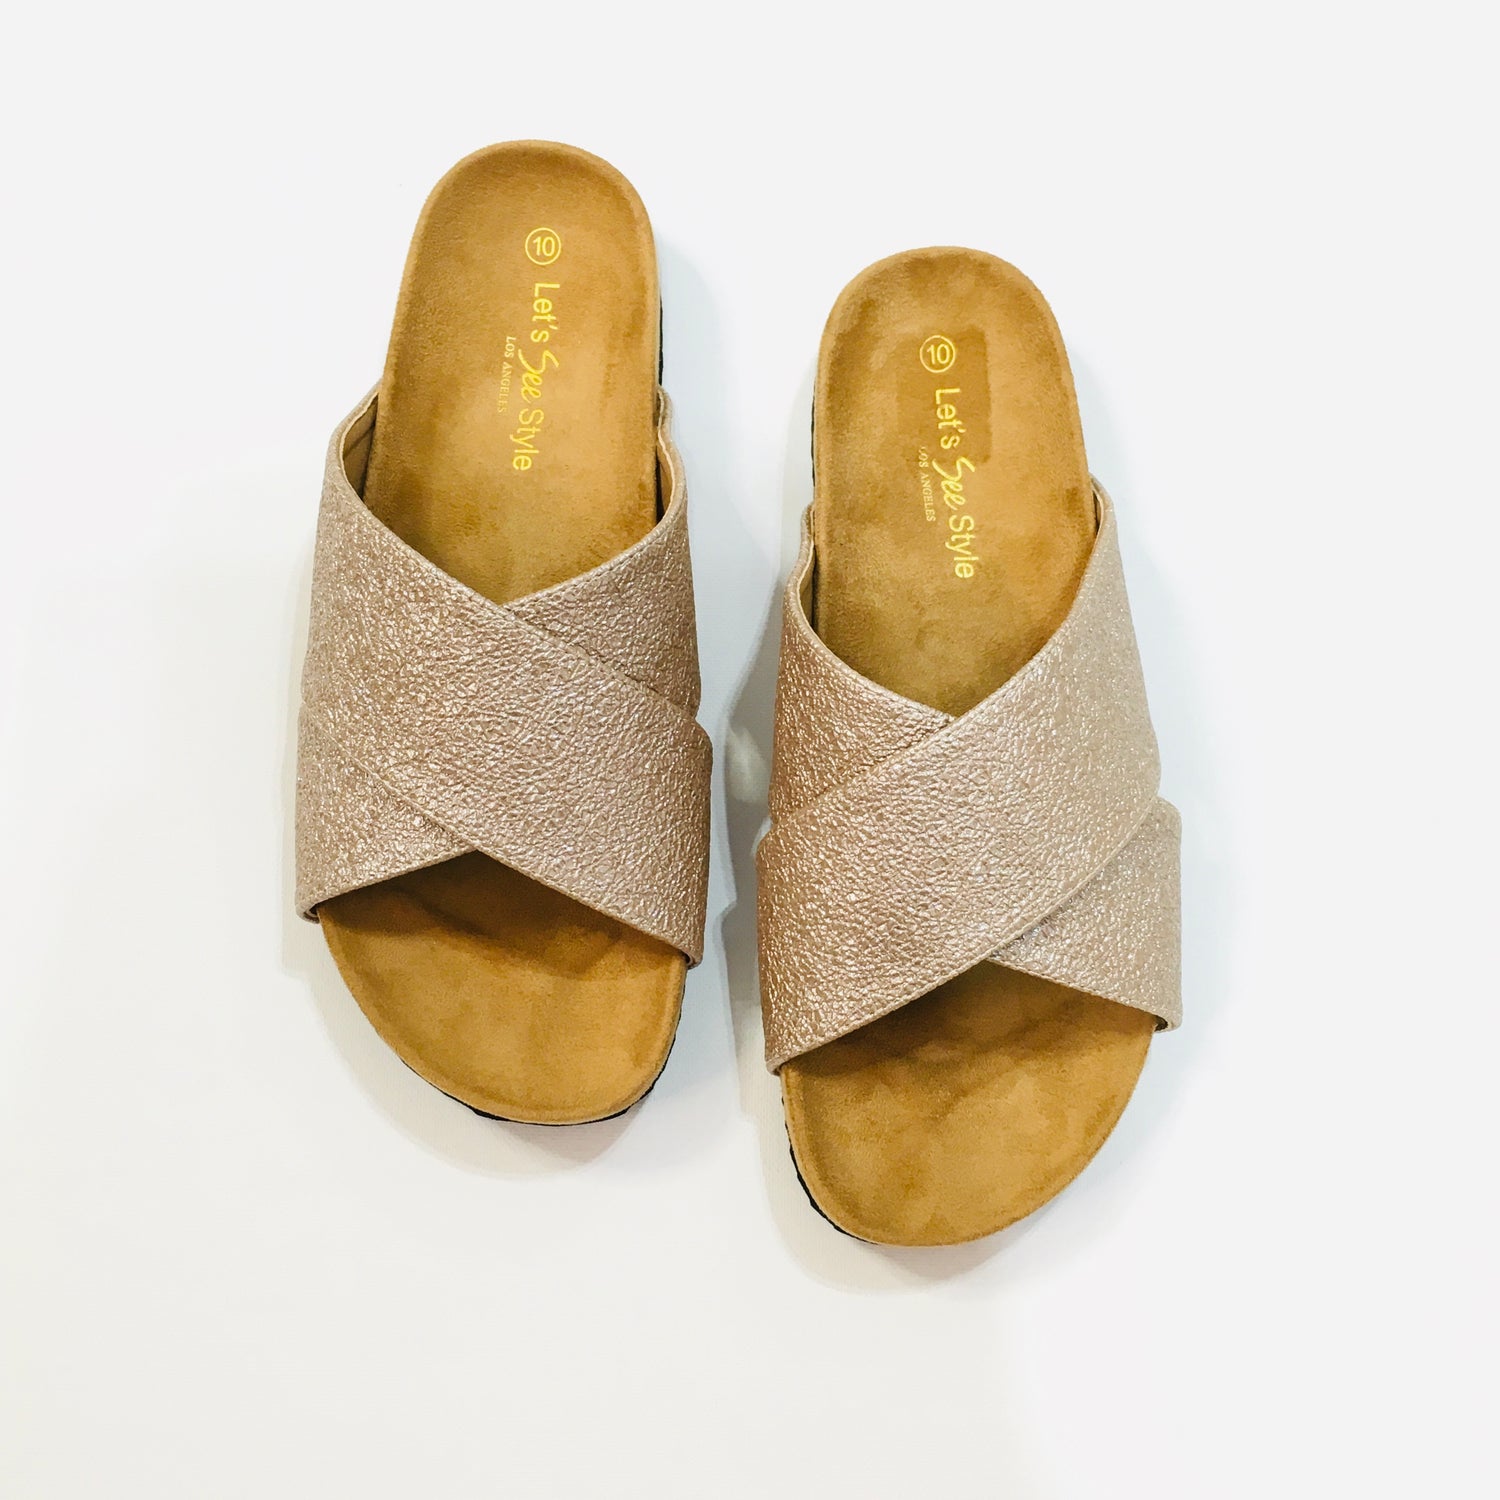 Slide On Sandals - Rose Gold - KaraMarie Boutique